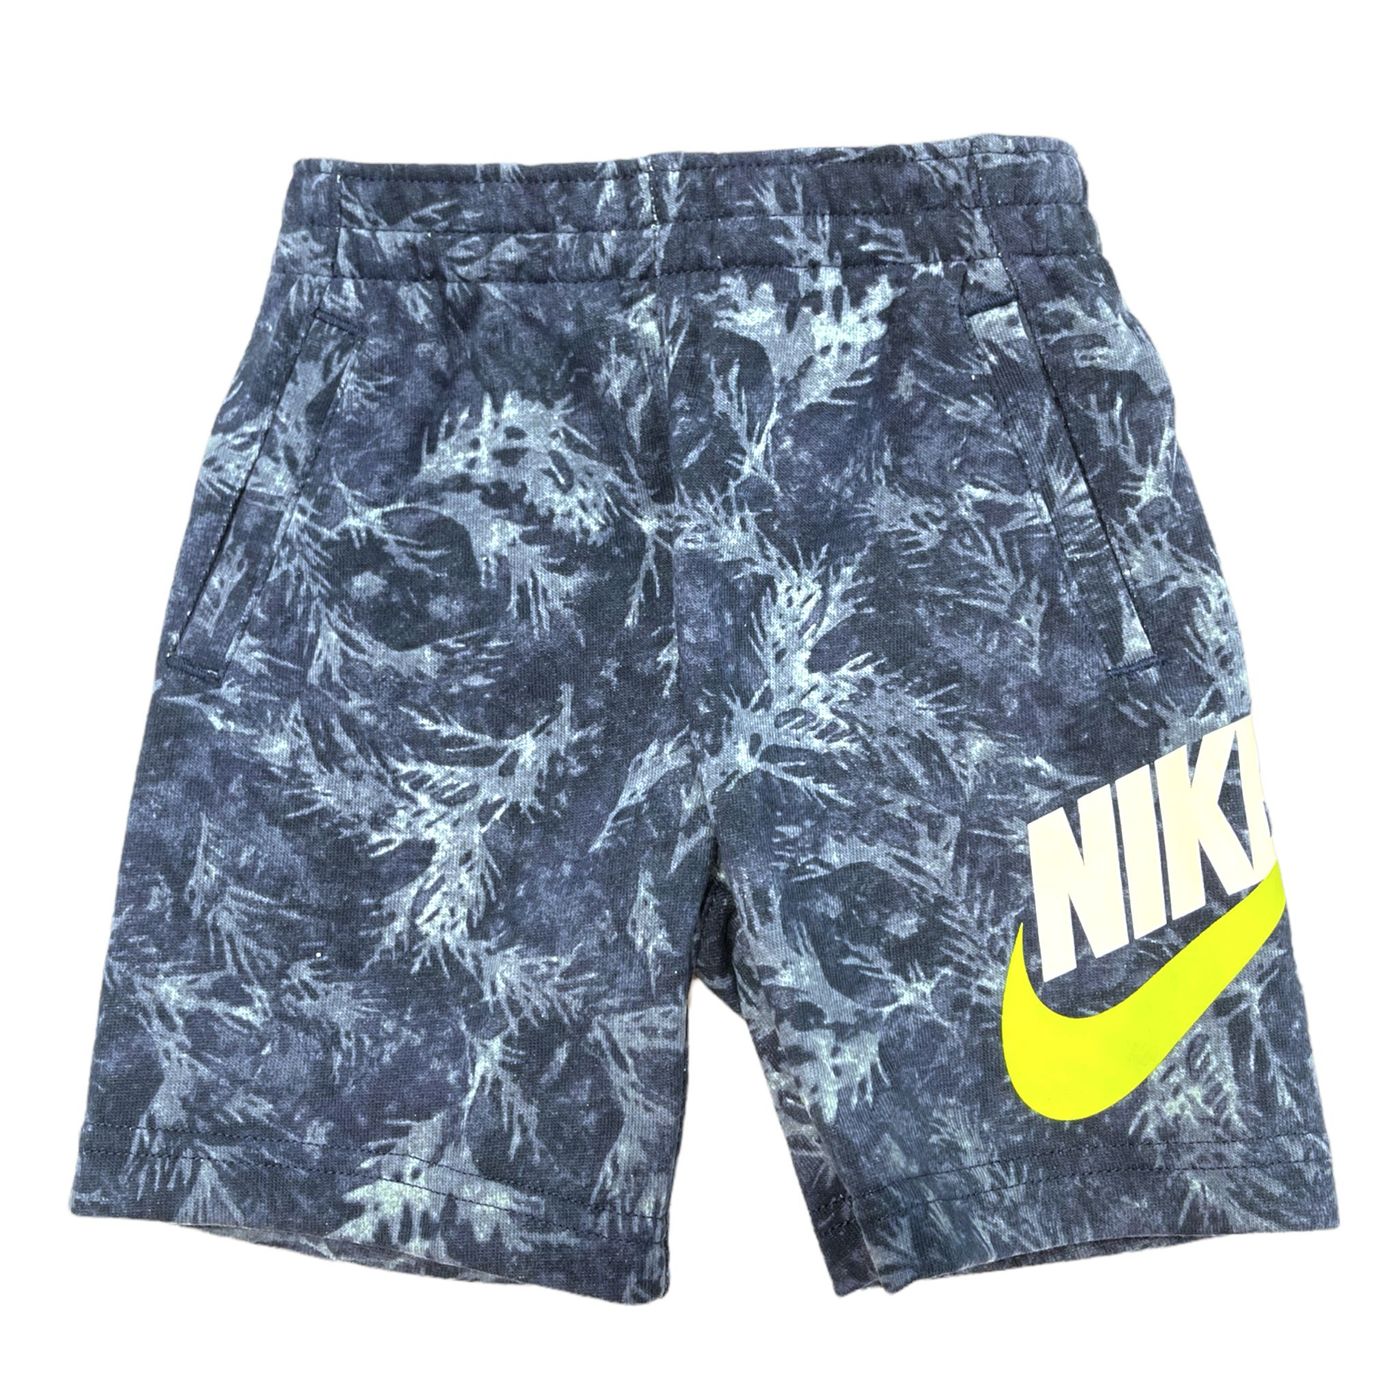 86J465-U90 - Shorts - Nike